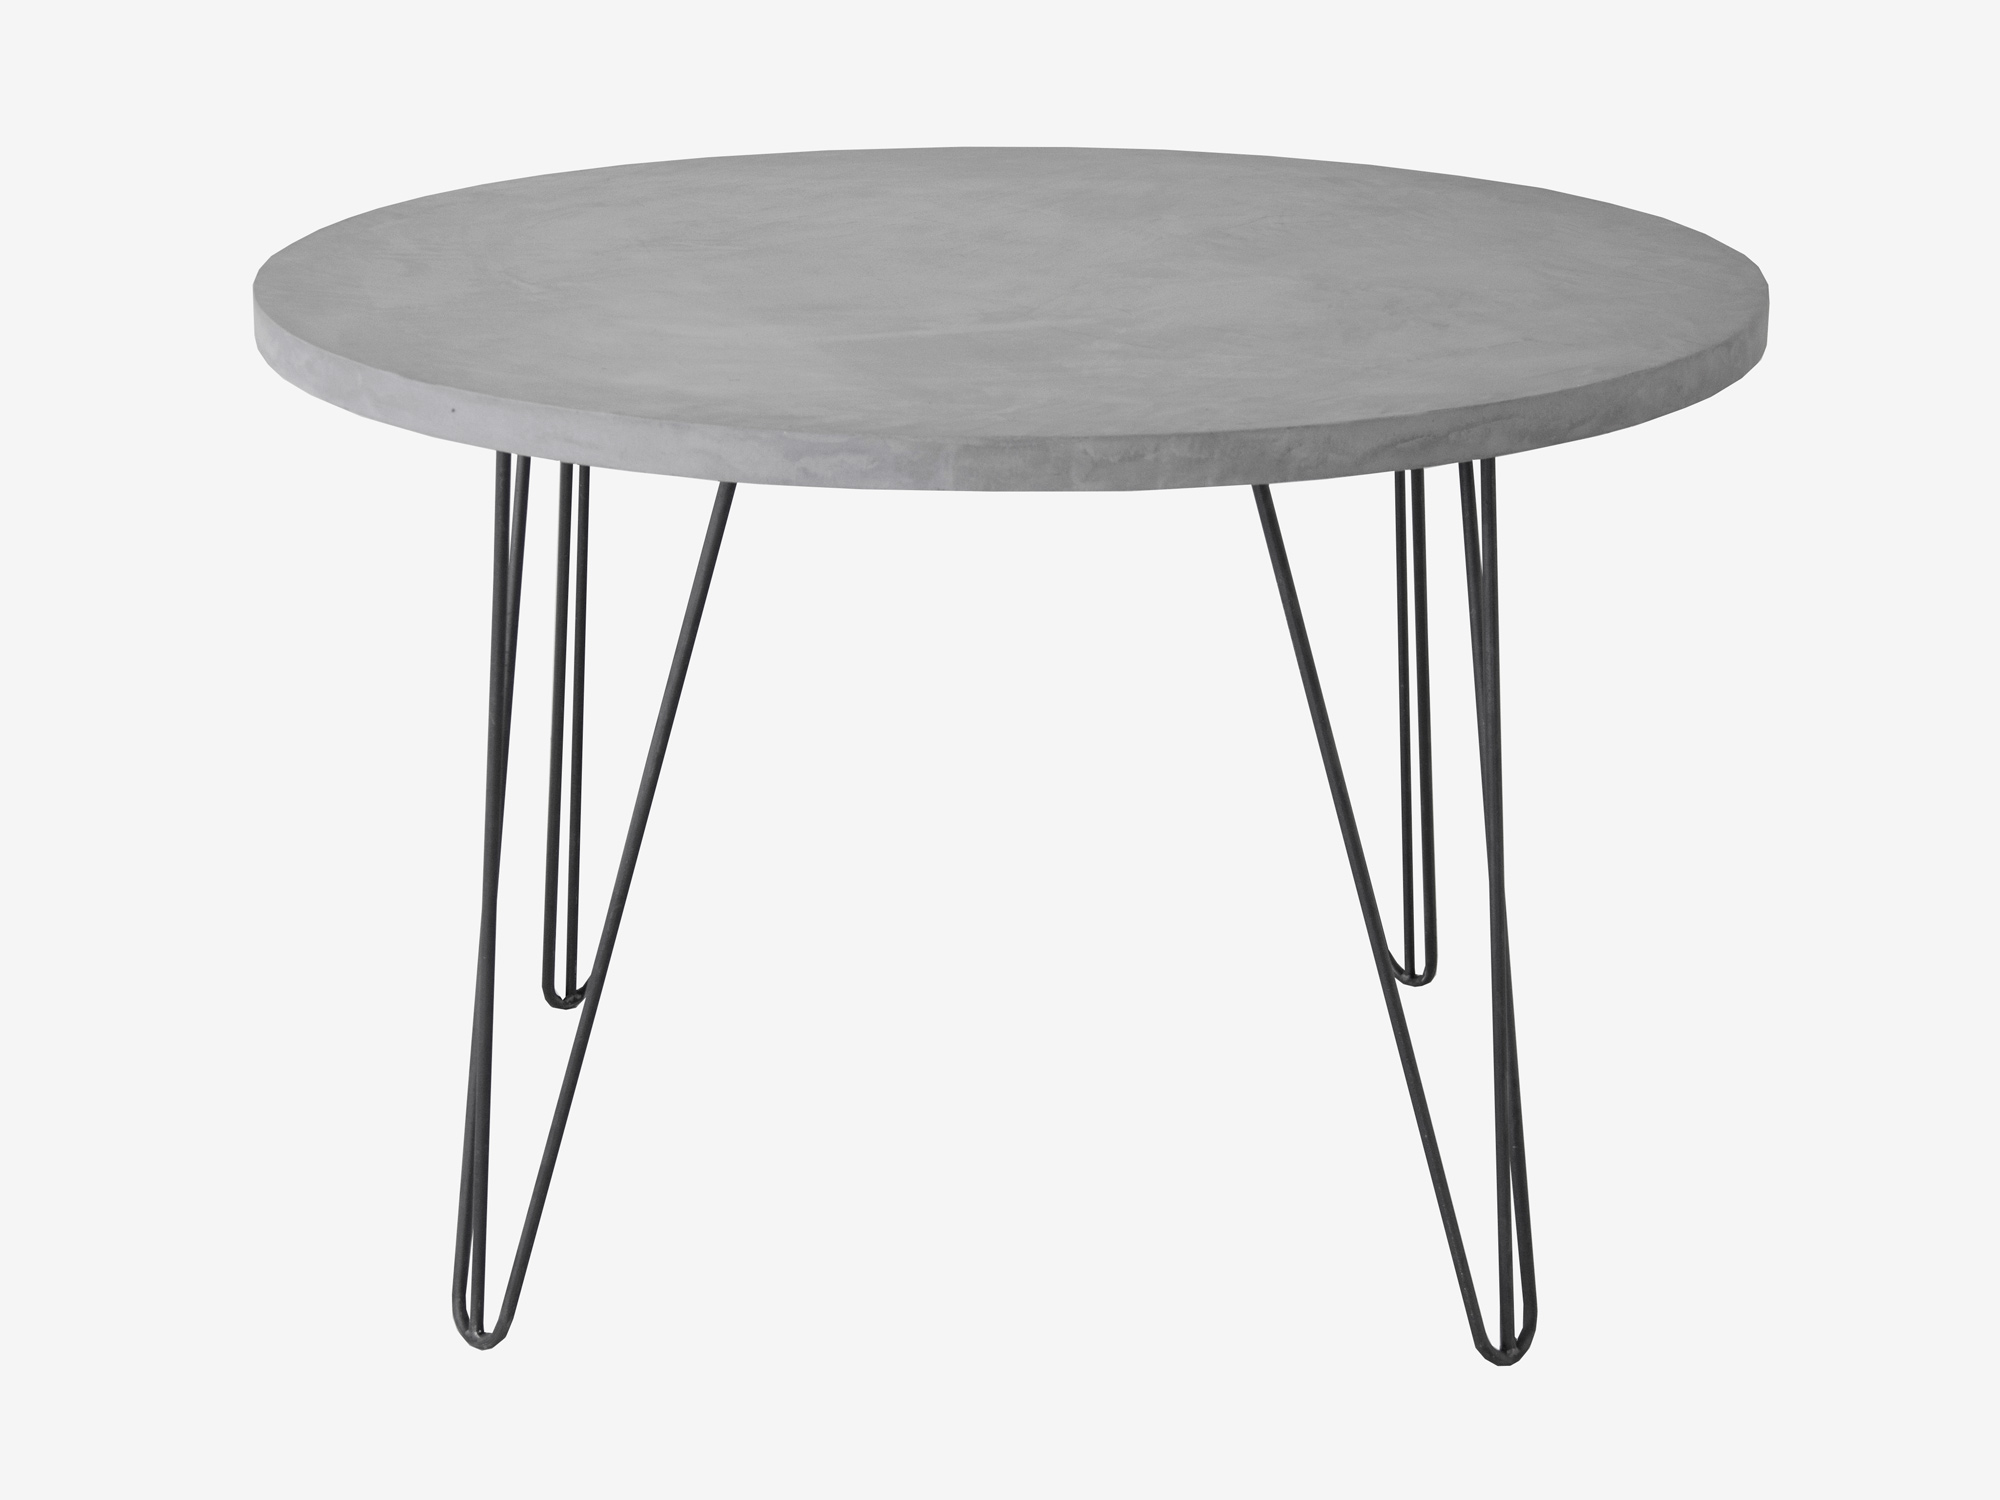 Betere Ronde tafel van beton op maat gemaakt | FØRN microbeton meubelen EL-08